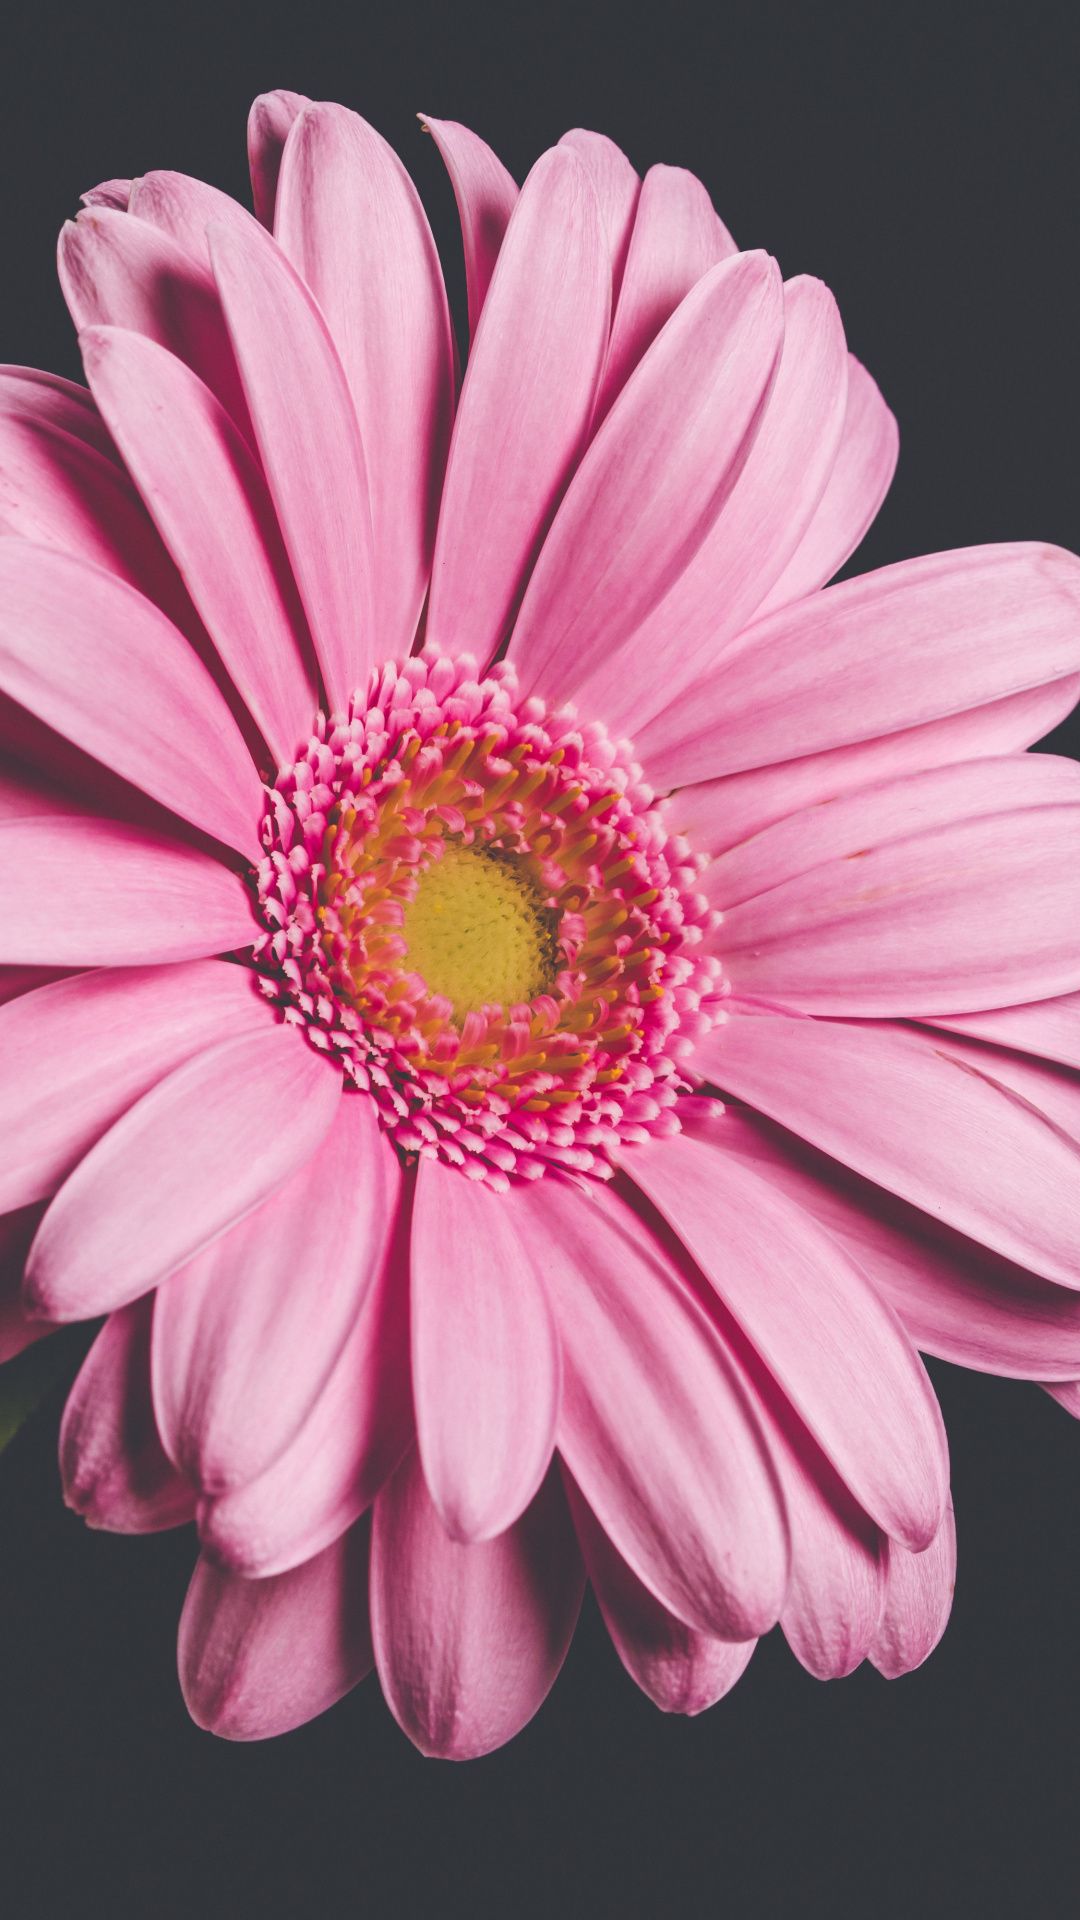 1080x1920 Pink Gerbera flower close up wallpaper Pink gerbera 1080x1920